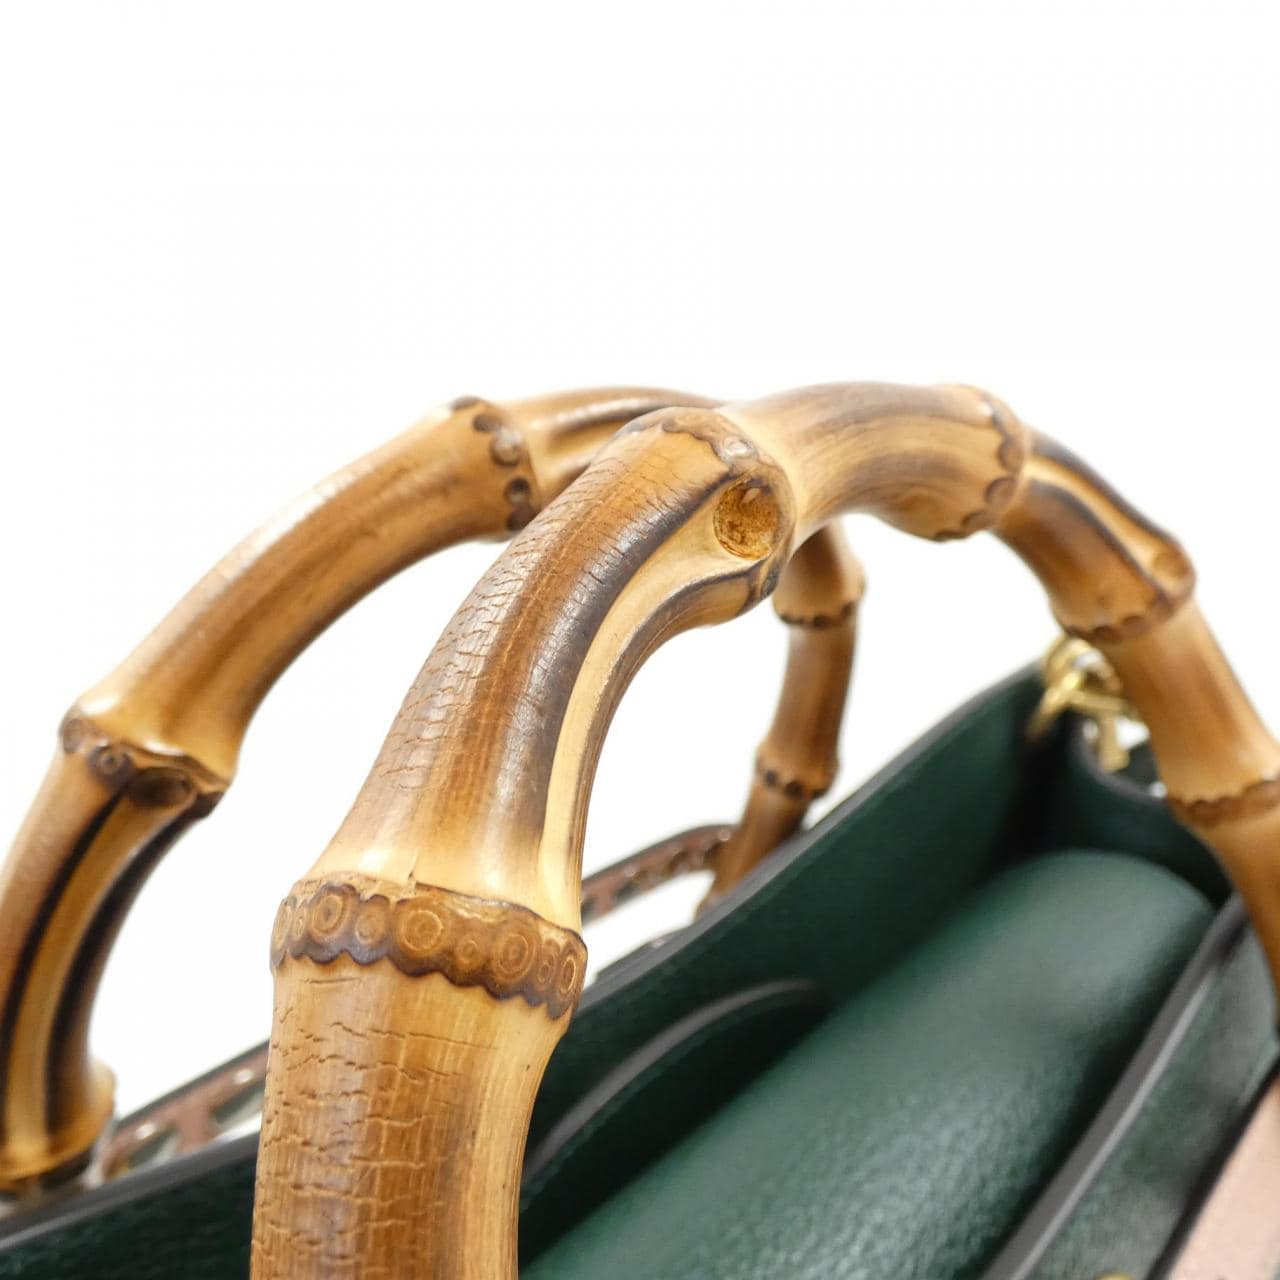 [Unused items] Gucci DIANA 721080 AAA7E bag